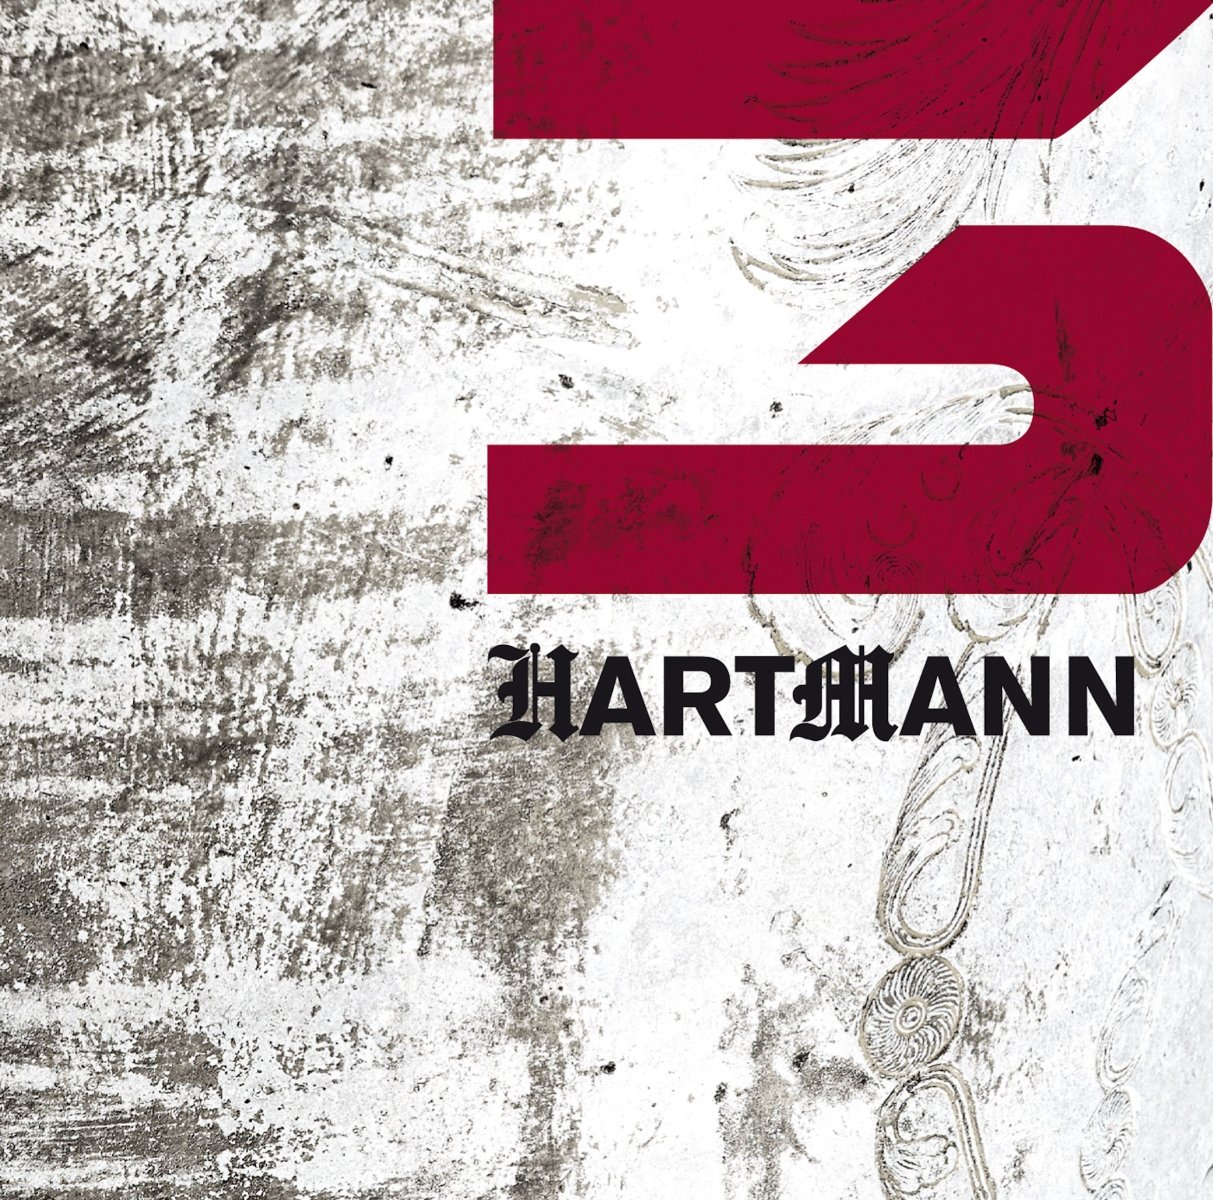 CD Shop - HARTMANN 3